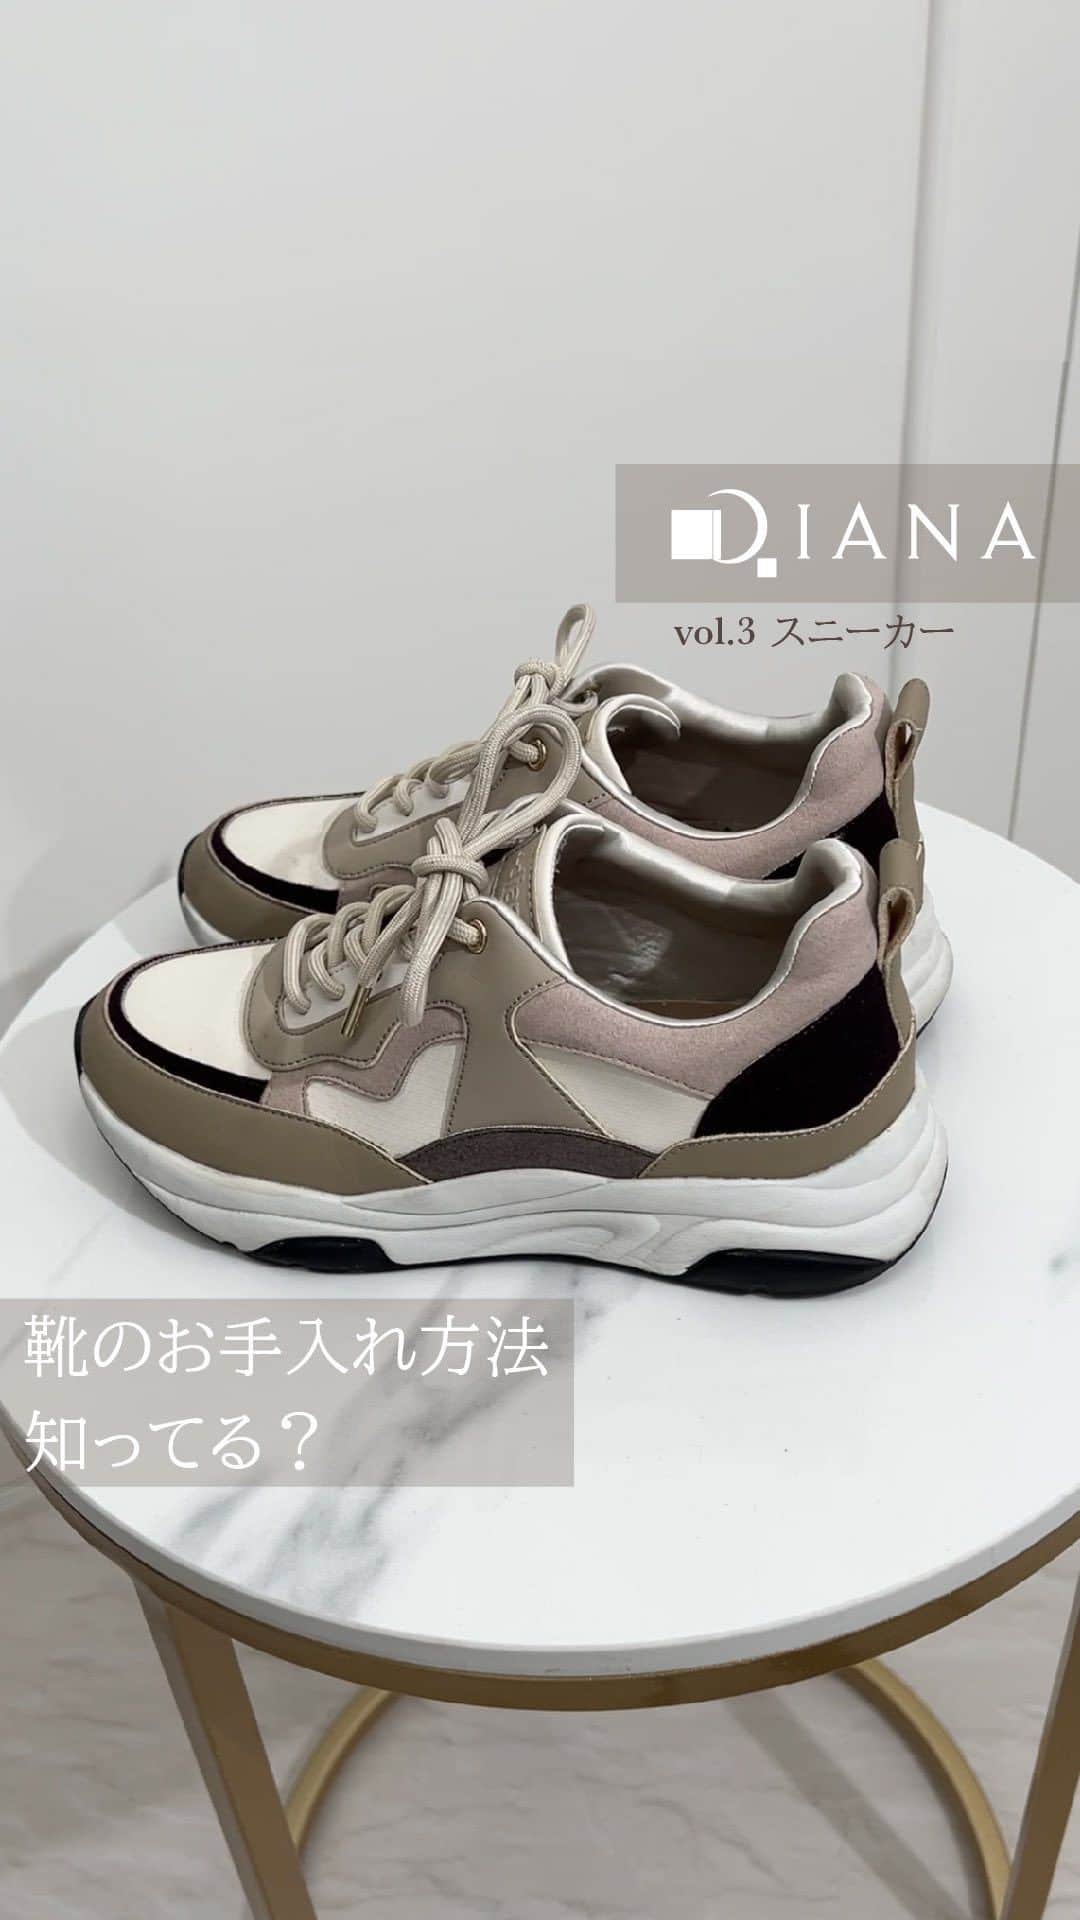 ダイアナ プレスのインスタグラム：「お手入れ方法はご存じですか？♡ 【vol.3 スニーカー編】  ダイアナのシューケアグッズを活用して、靴を綺麗な状態で長く履きましょう！  #ダイアナ #ダイアナシューズ #DIANA #dianashoes #トレンドシューズ #大人可愛い#ブーツ #大人女子 #ロングブーツ #ロングブーツコーデ #ショートブーツ #ショートブーツコーデ #大人シンプル #大人フェミニン #大人カジュアル #ブーツ好き #ブーツ女子 #ニーハイブーツ #ヒールブーツ #xsサイズ #トレンドブーツ #シンプルブーツ #xlサイズ #お手入れ #お手入れ方法 #シューケア #スニーカー」